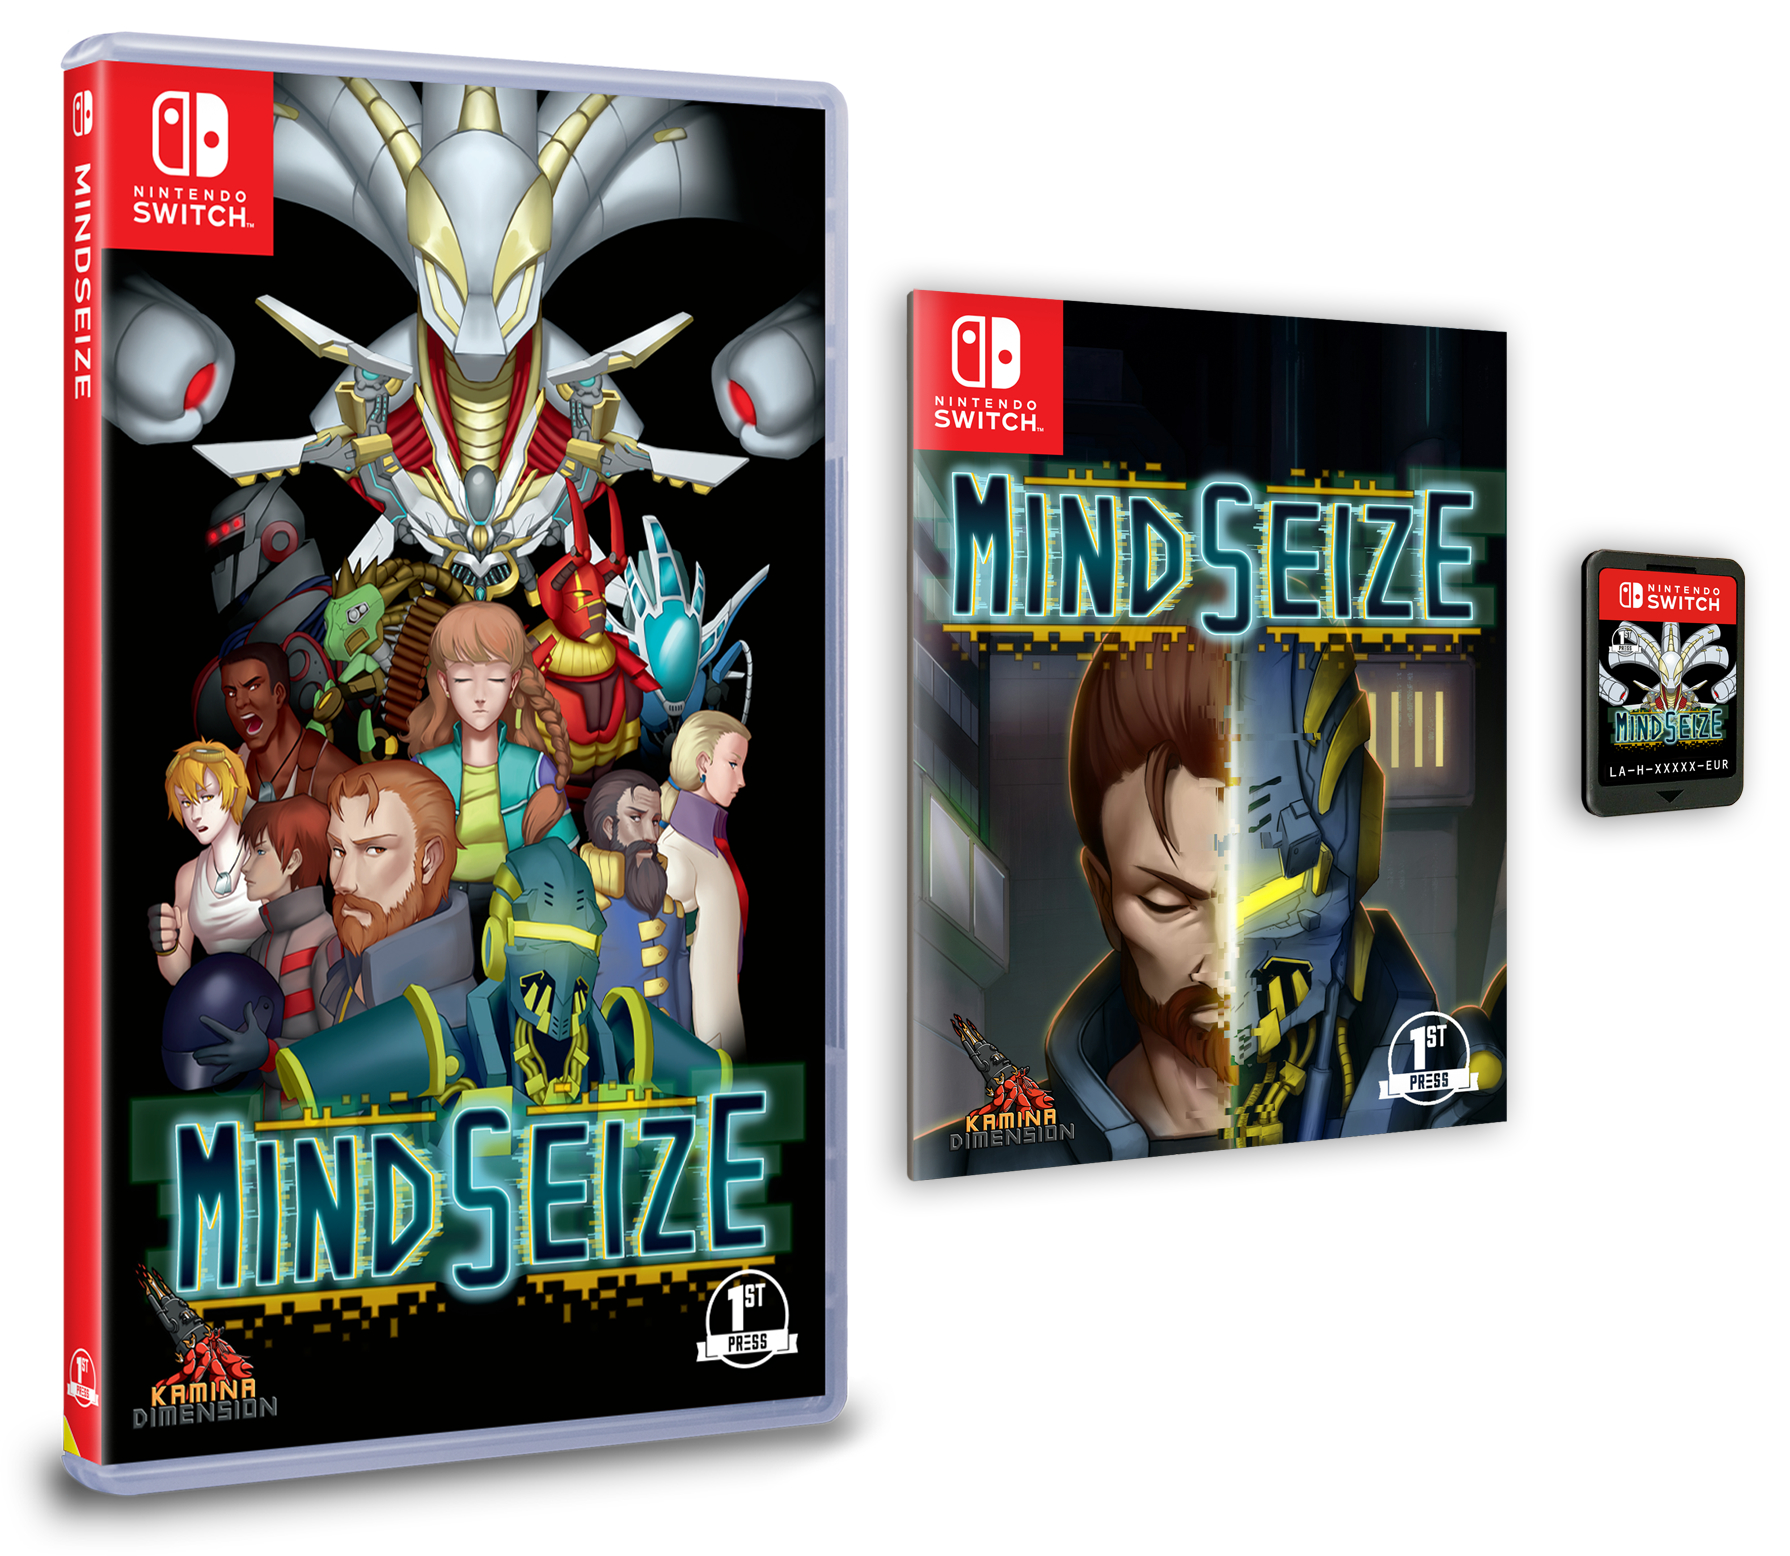 Mindsize マインド シーズ のswitch向けパッケージ版 ダウンロード版が発売決定 Nintendo Switch 情報ブログ